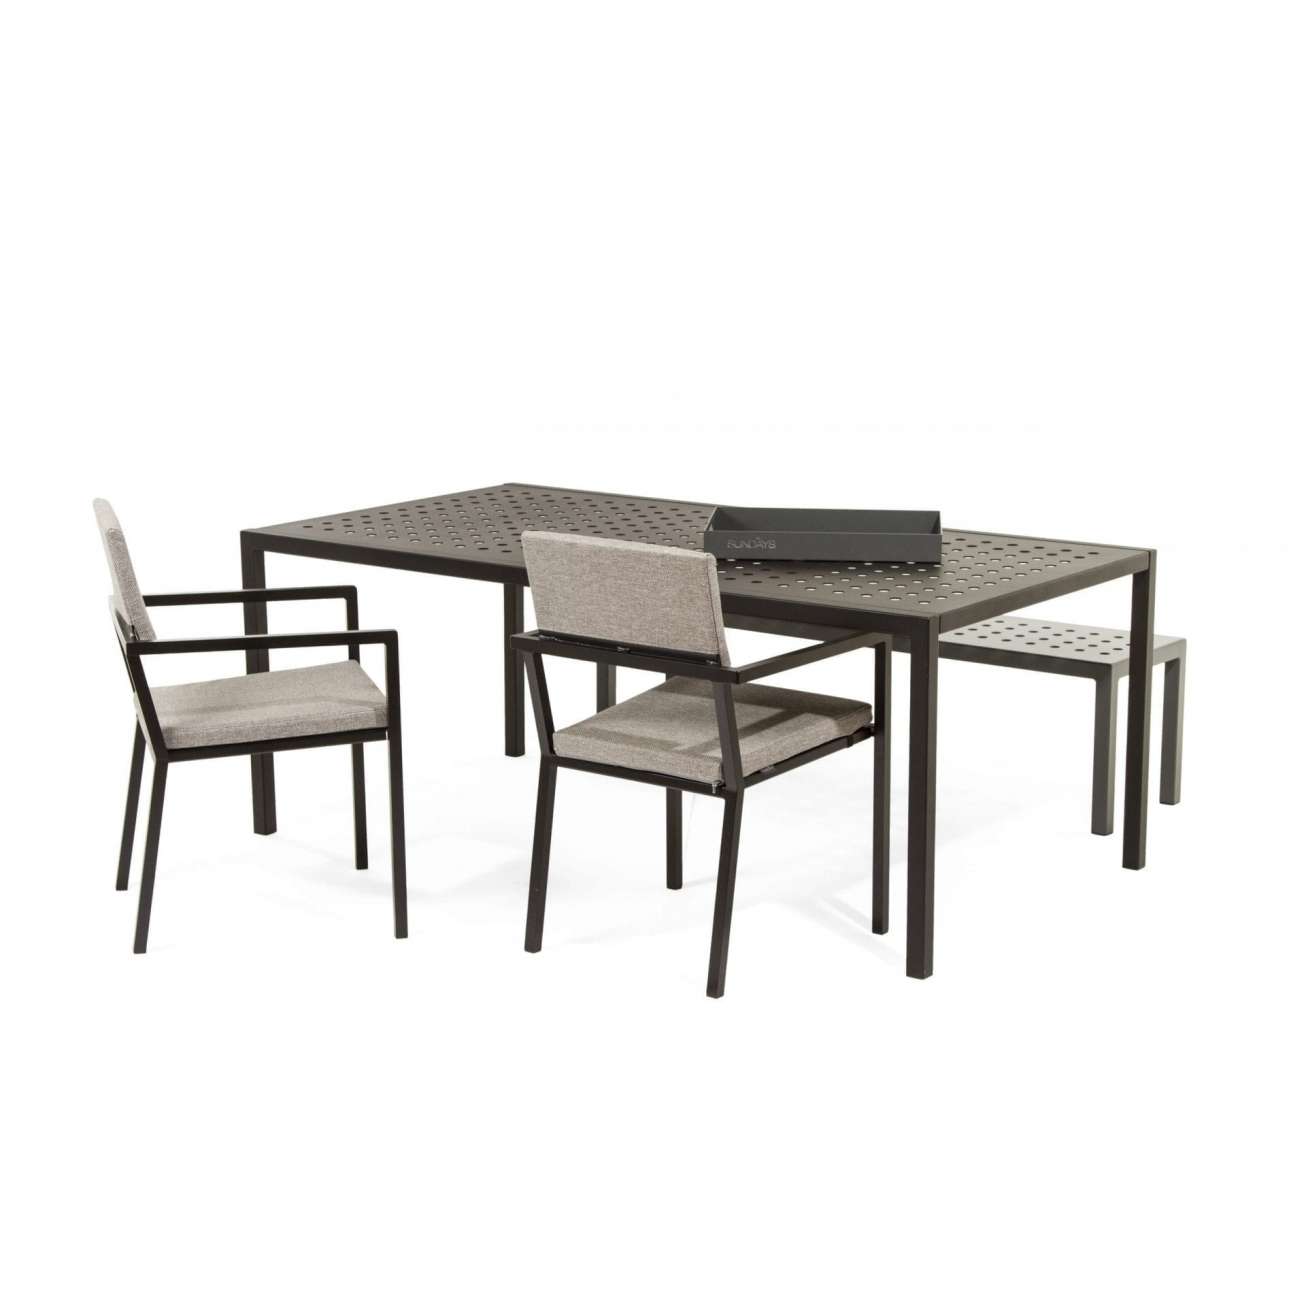 Sundays spisegruppe - spisestoler, spisebord og spisebenk i brun aluminium med lysgrå puter